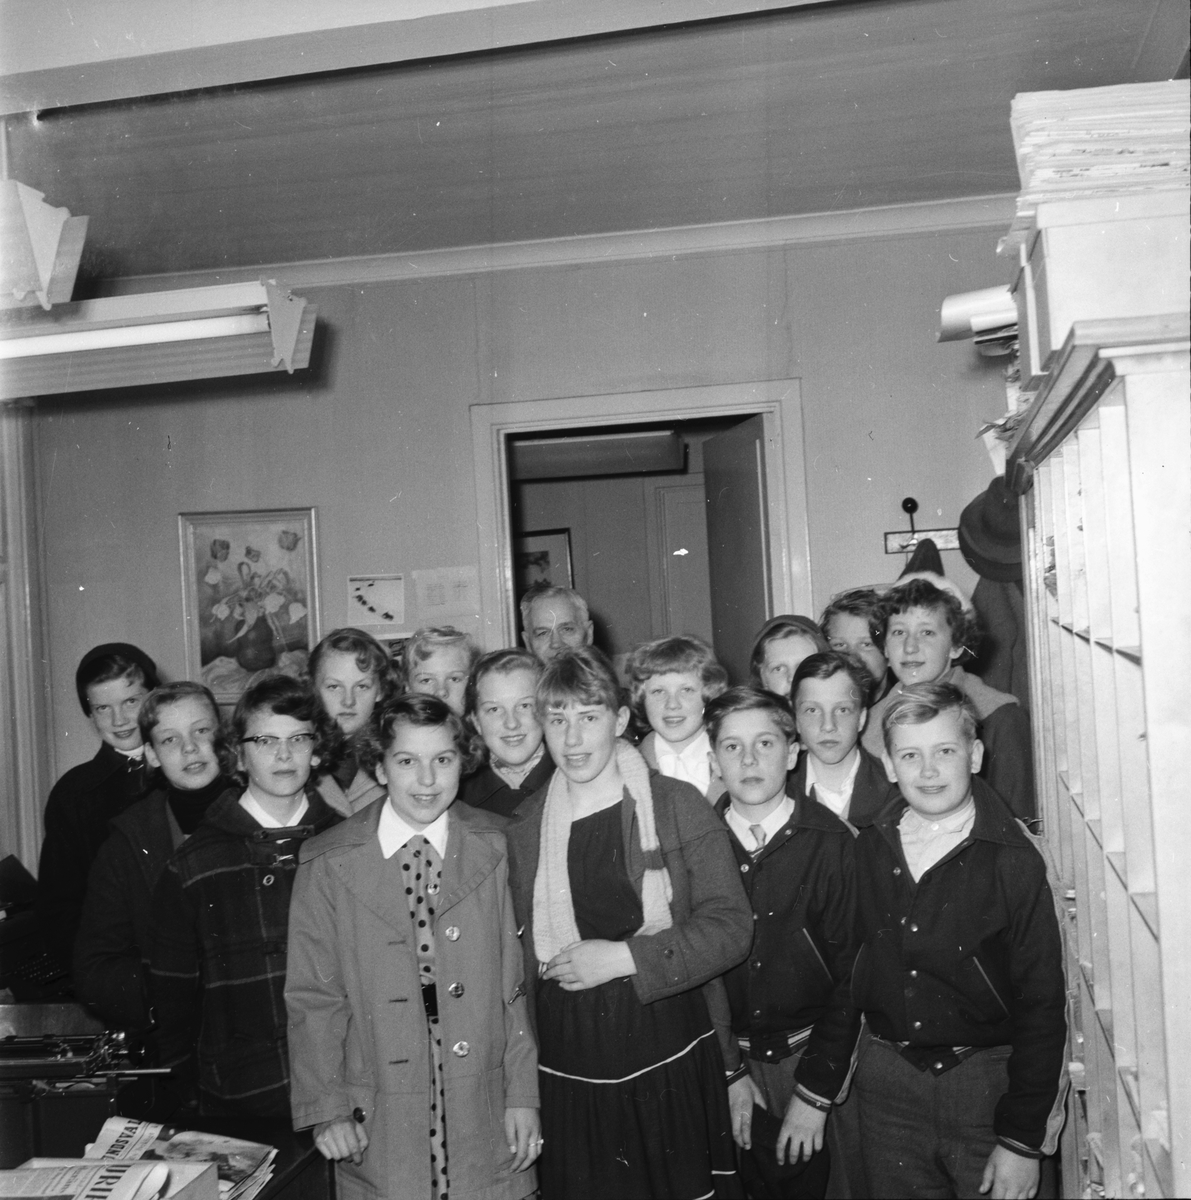 Voxnabarn besöker Ljusnan.
April 1956